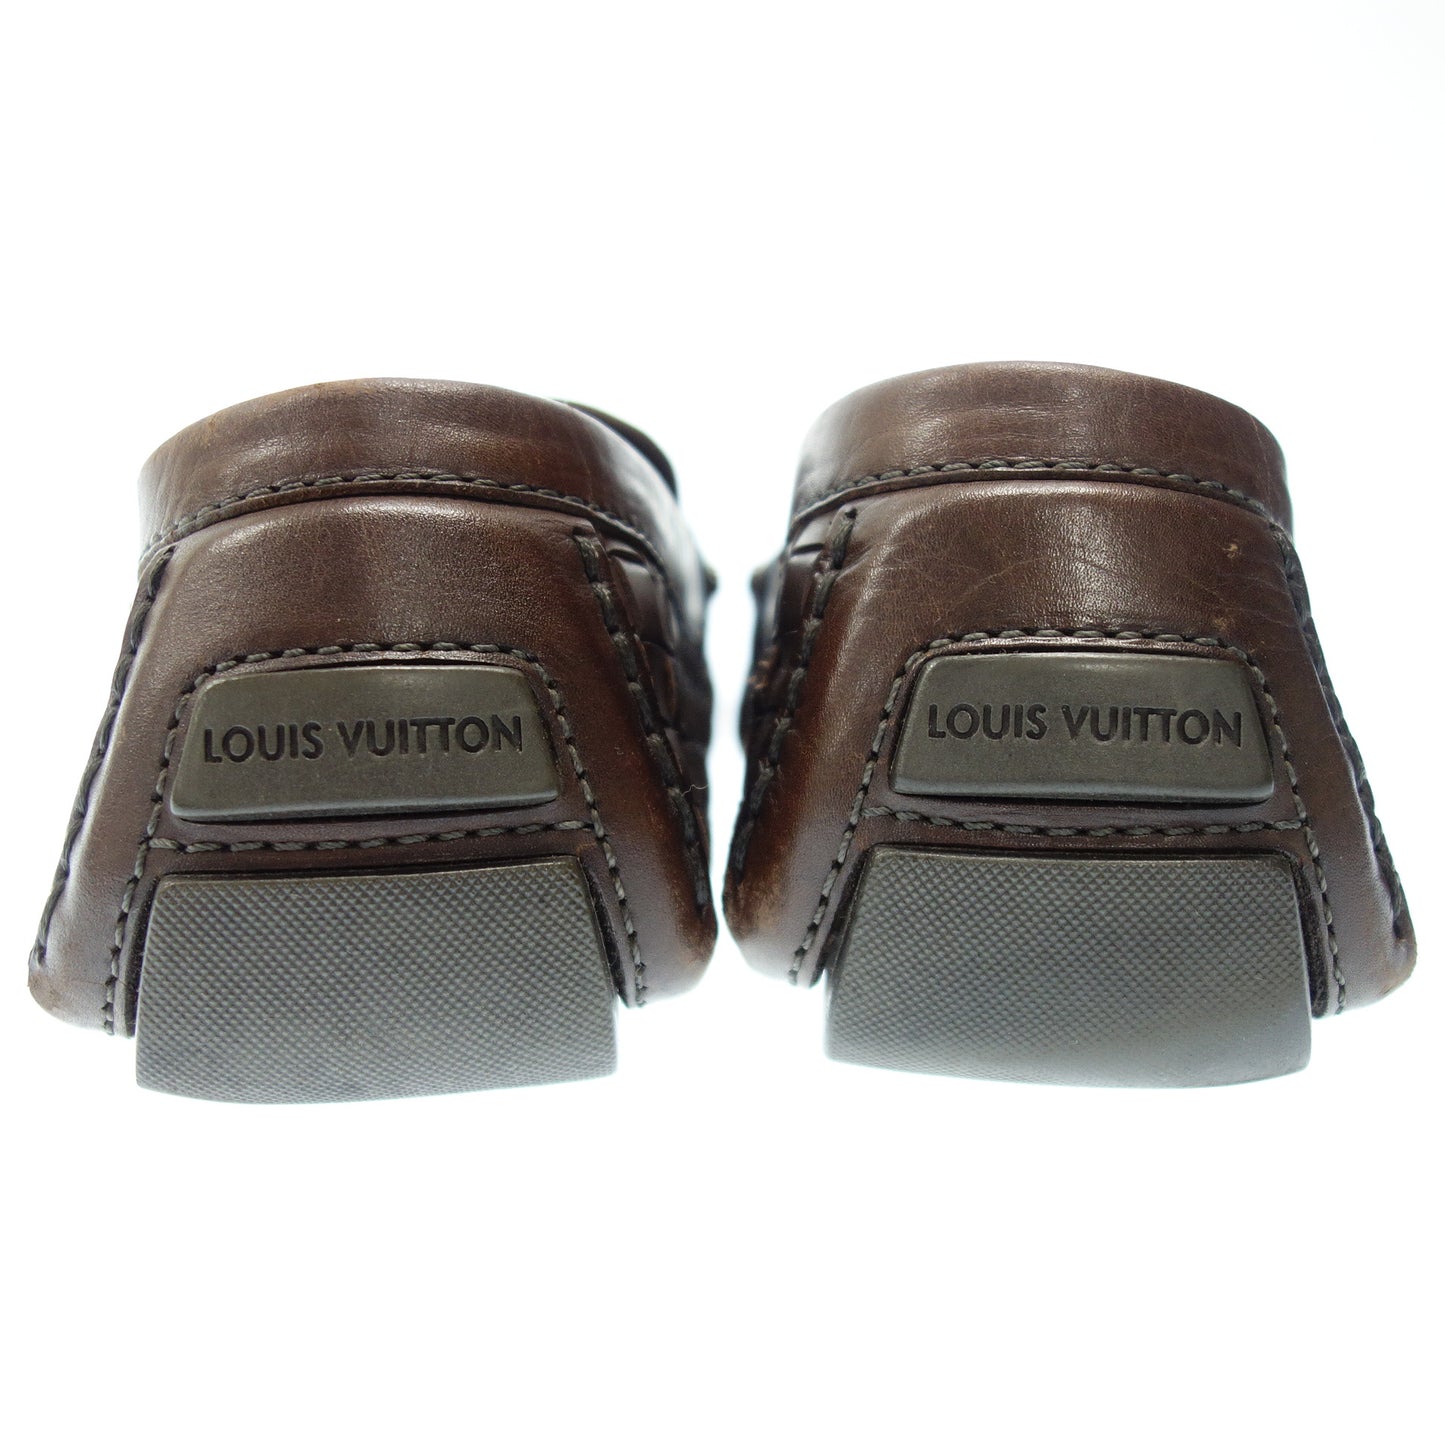 路易威登 驾驶鞋 蒙特卡洛线 LV 金属配件 男士 10.5 棕色 LOUIS VUITTON [AFC20] [二手货] 